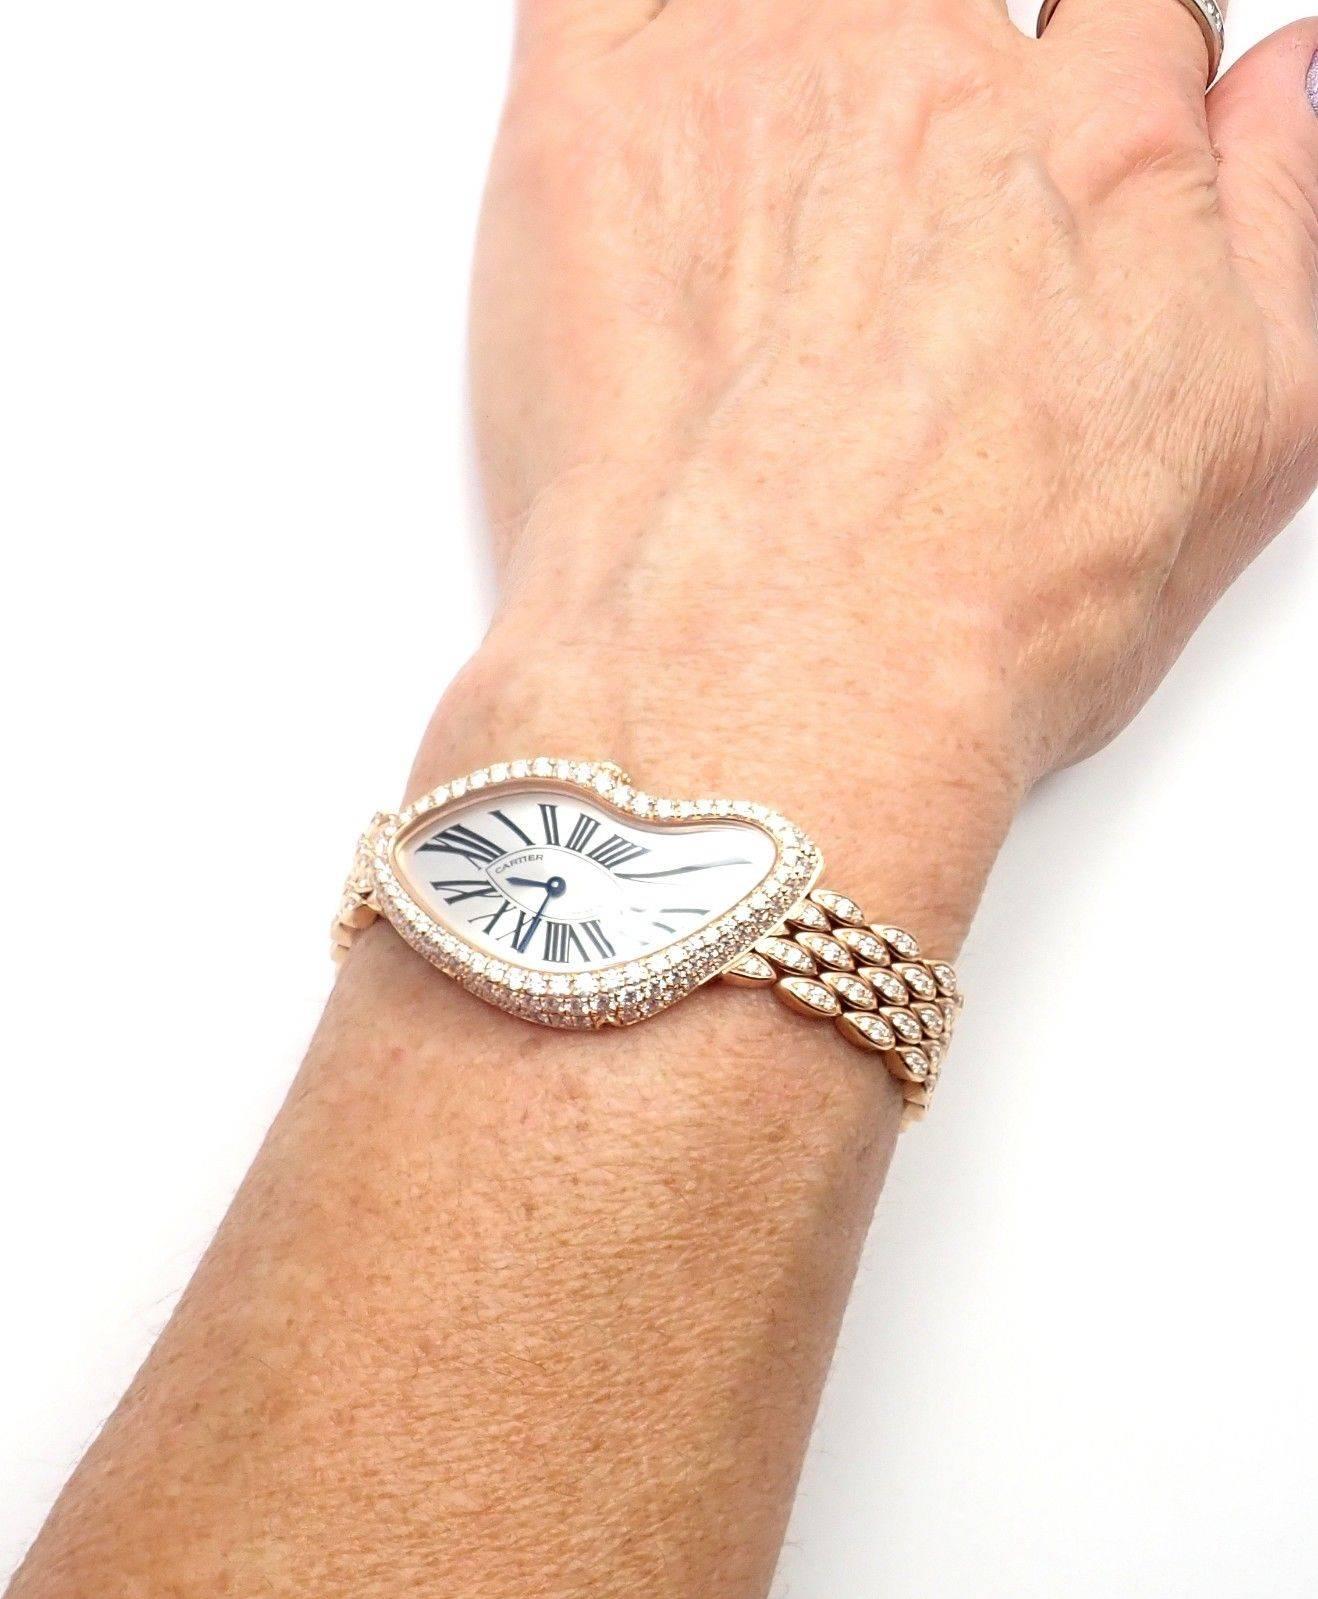 Montre-bracelet Crash Cartier en or rose et diamants édition limitée Ref HP100653 3